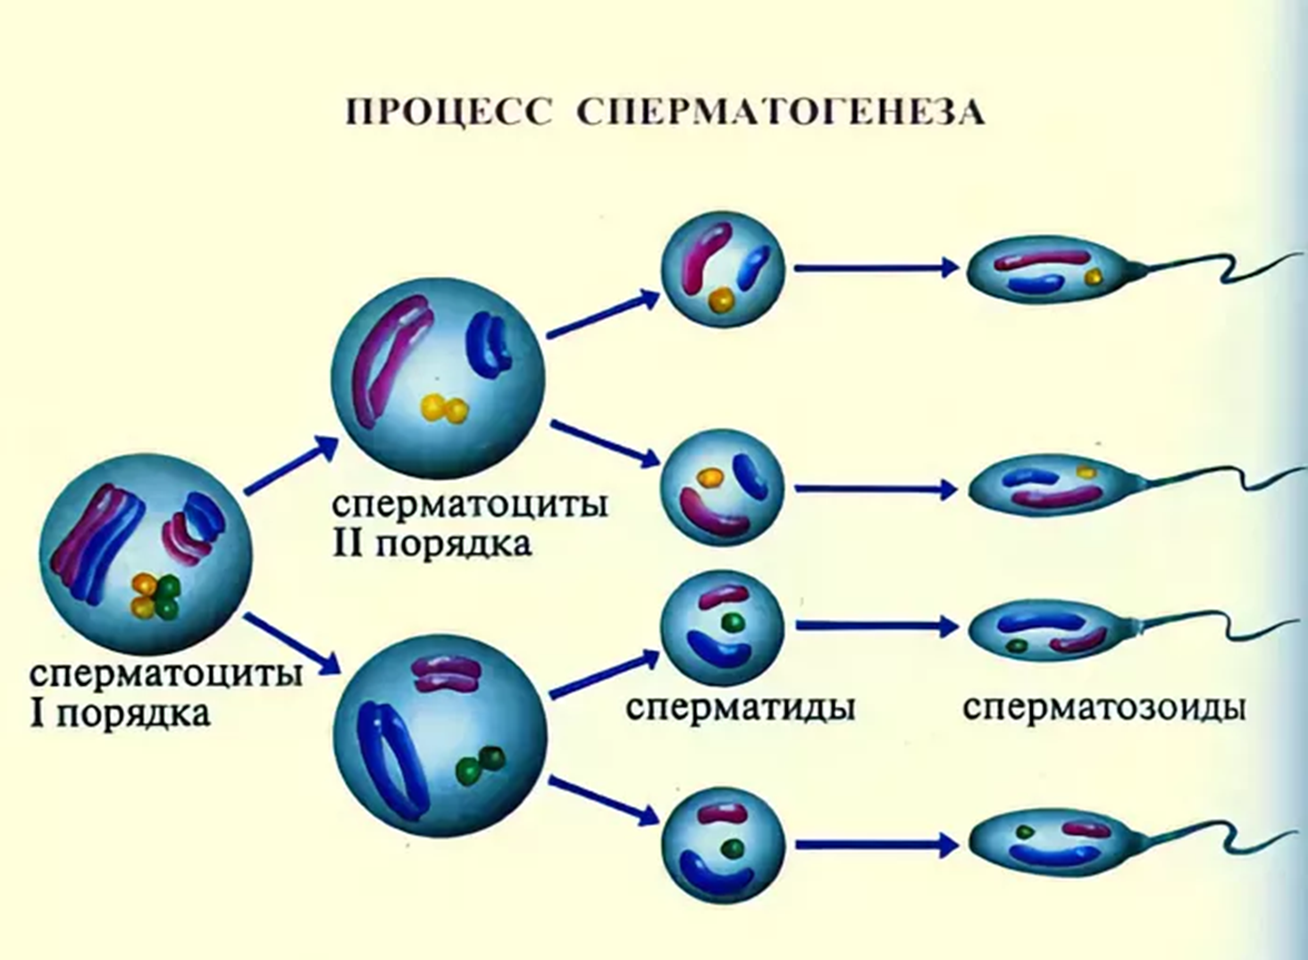 Первичные мужские половые клетки. Схема созревания спермиев. Клетки сперматогенеза (незрелые клетки). Схема образования сперматозоидов. Схема образования спермиев.